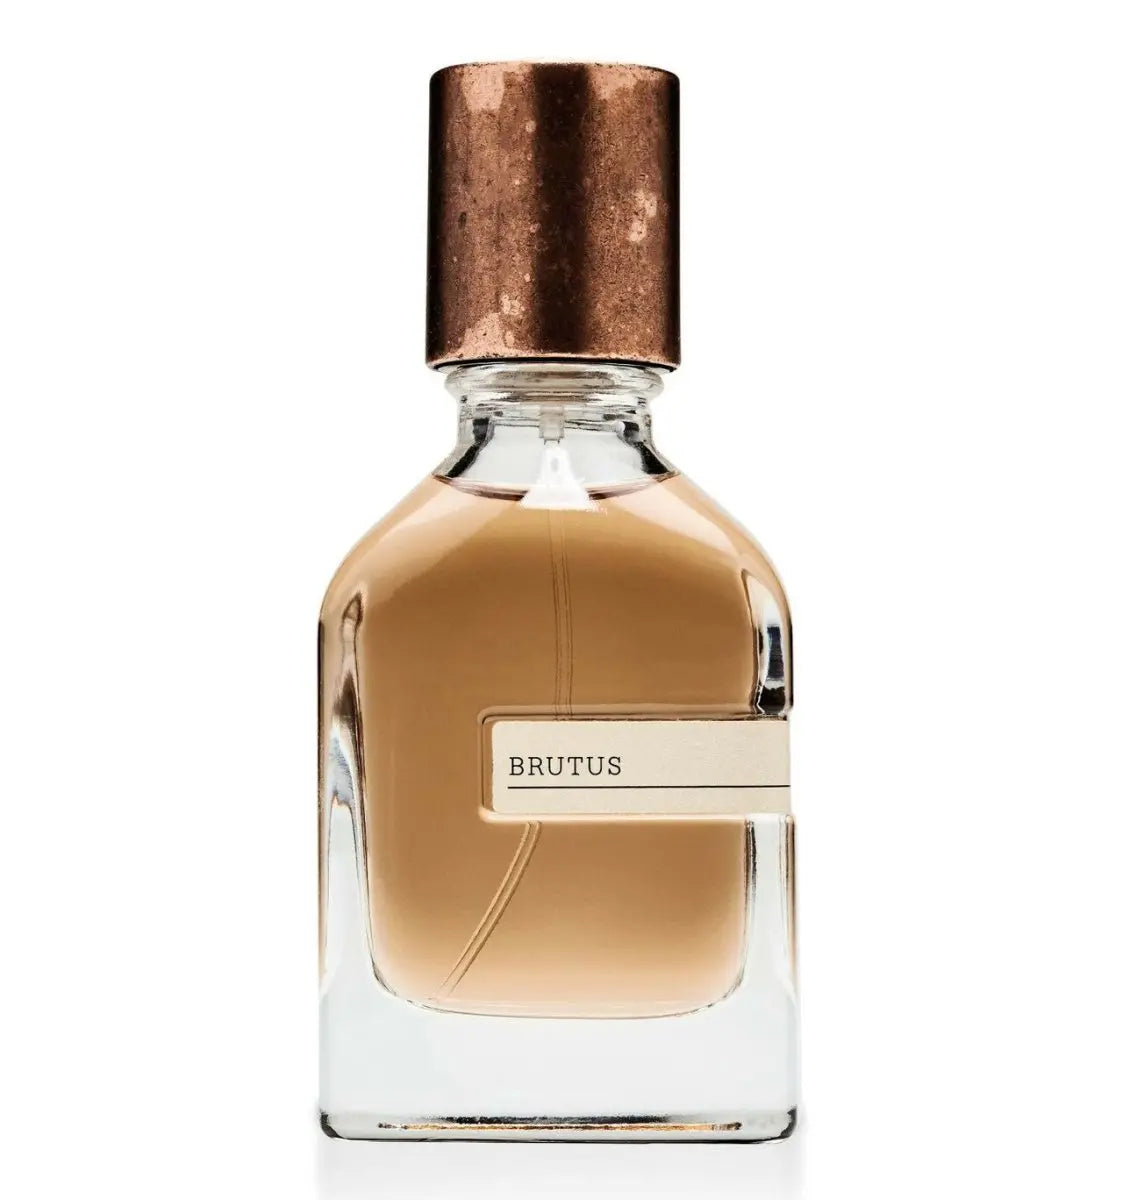 Orto parisi Brutus Extrait de parfum - 50 ml